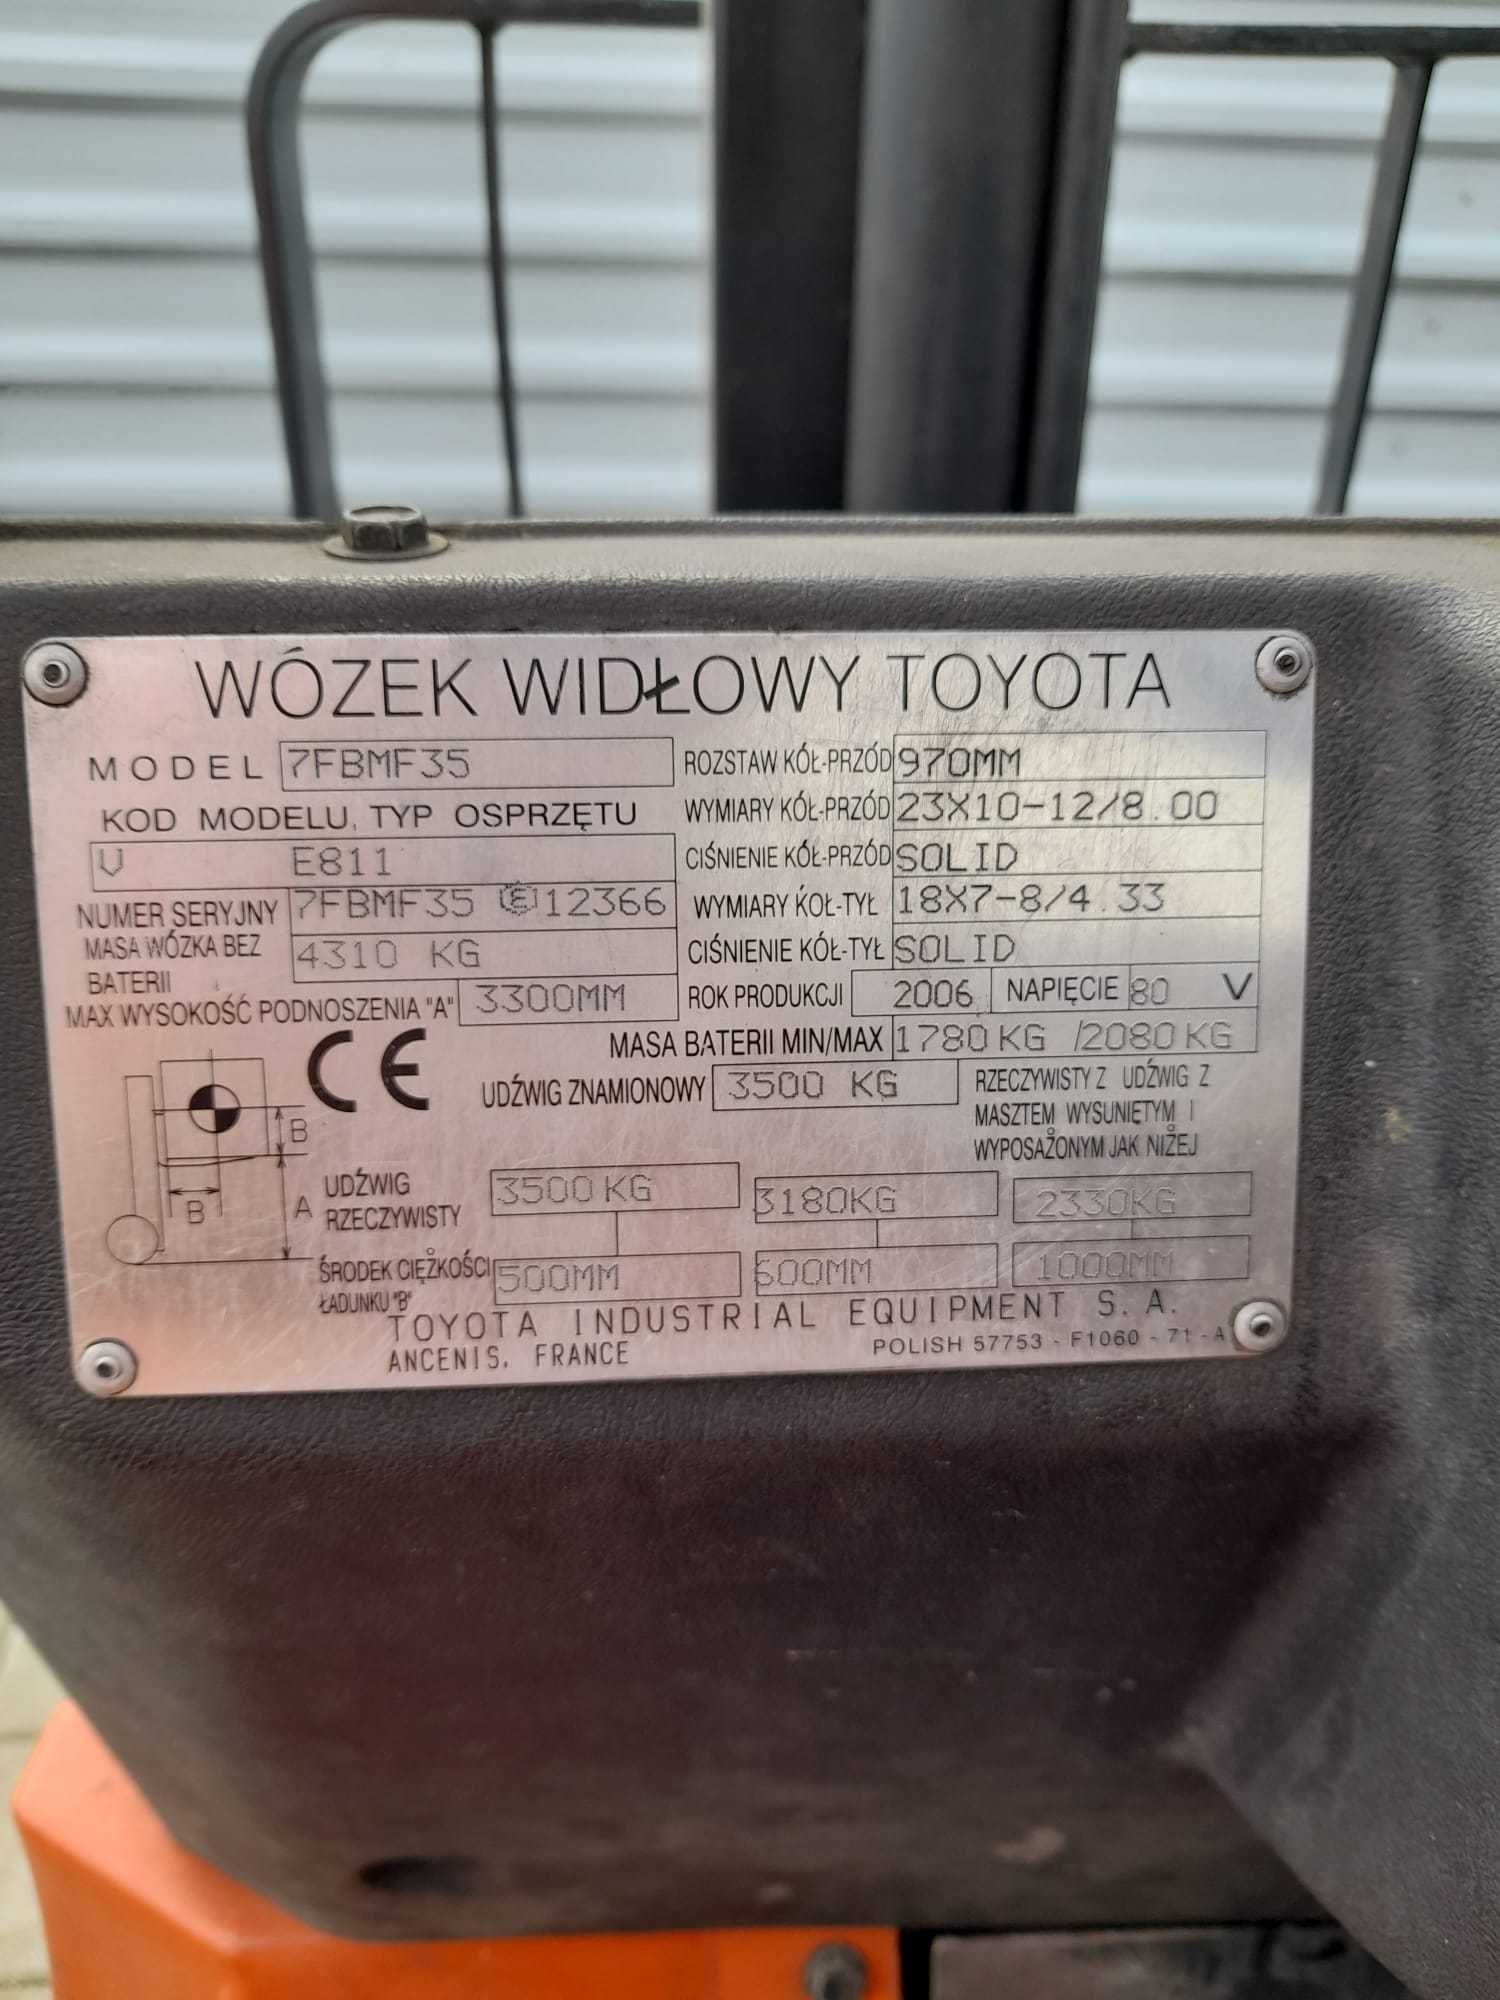 Wózek widłowy Toyota 7fbmf35 3,5 tony